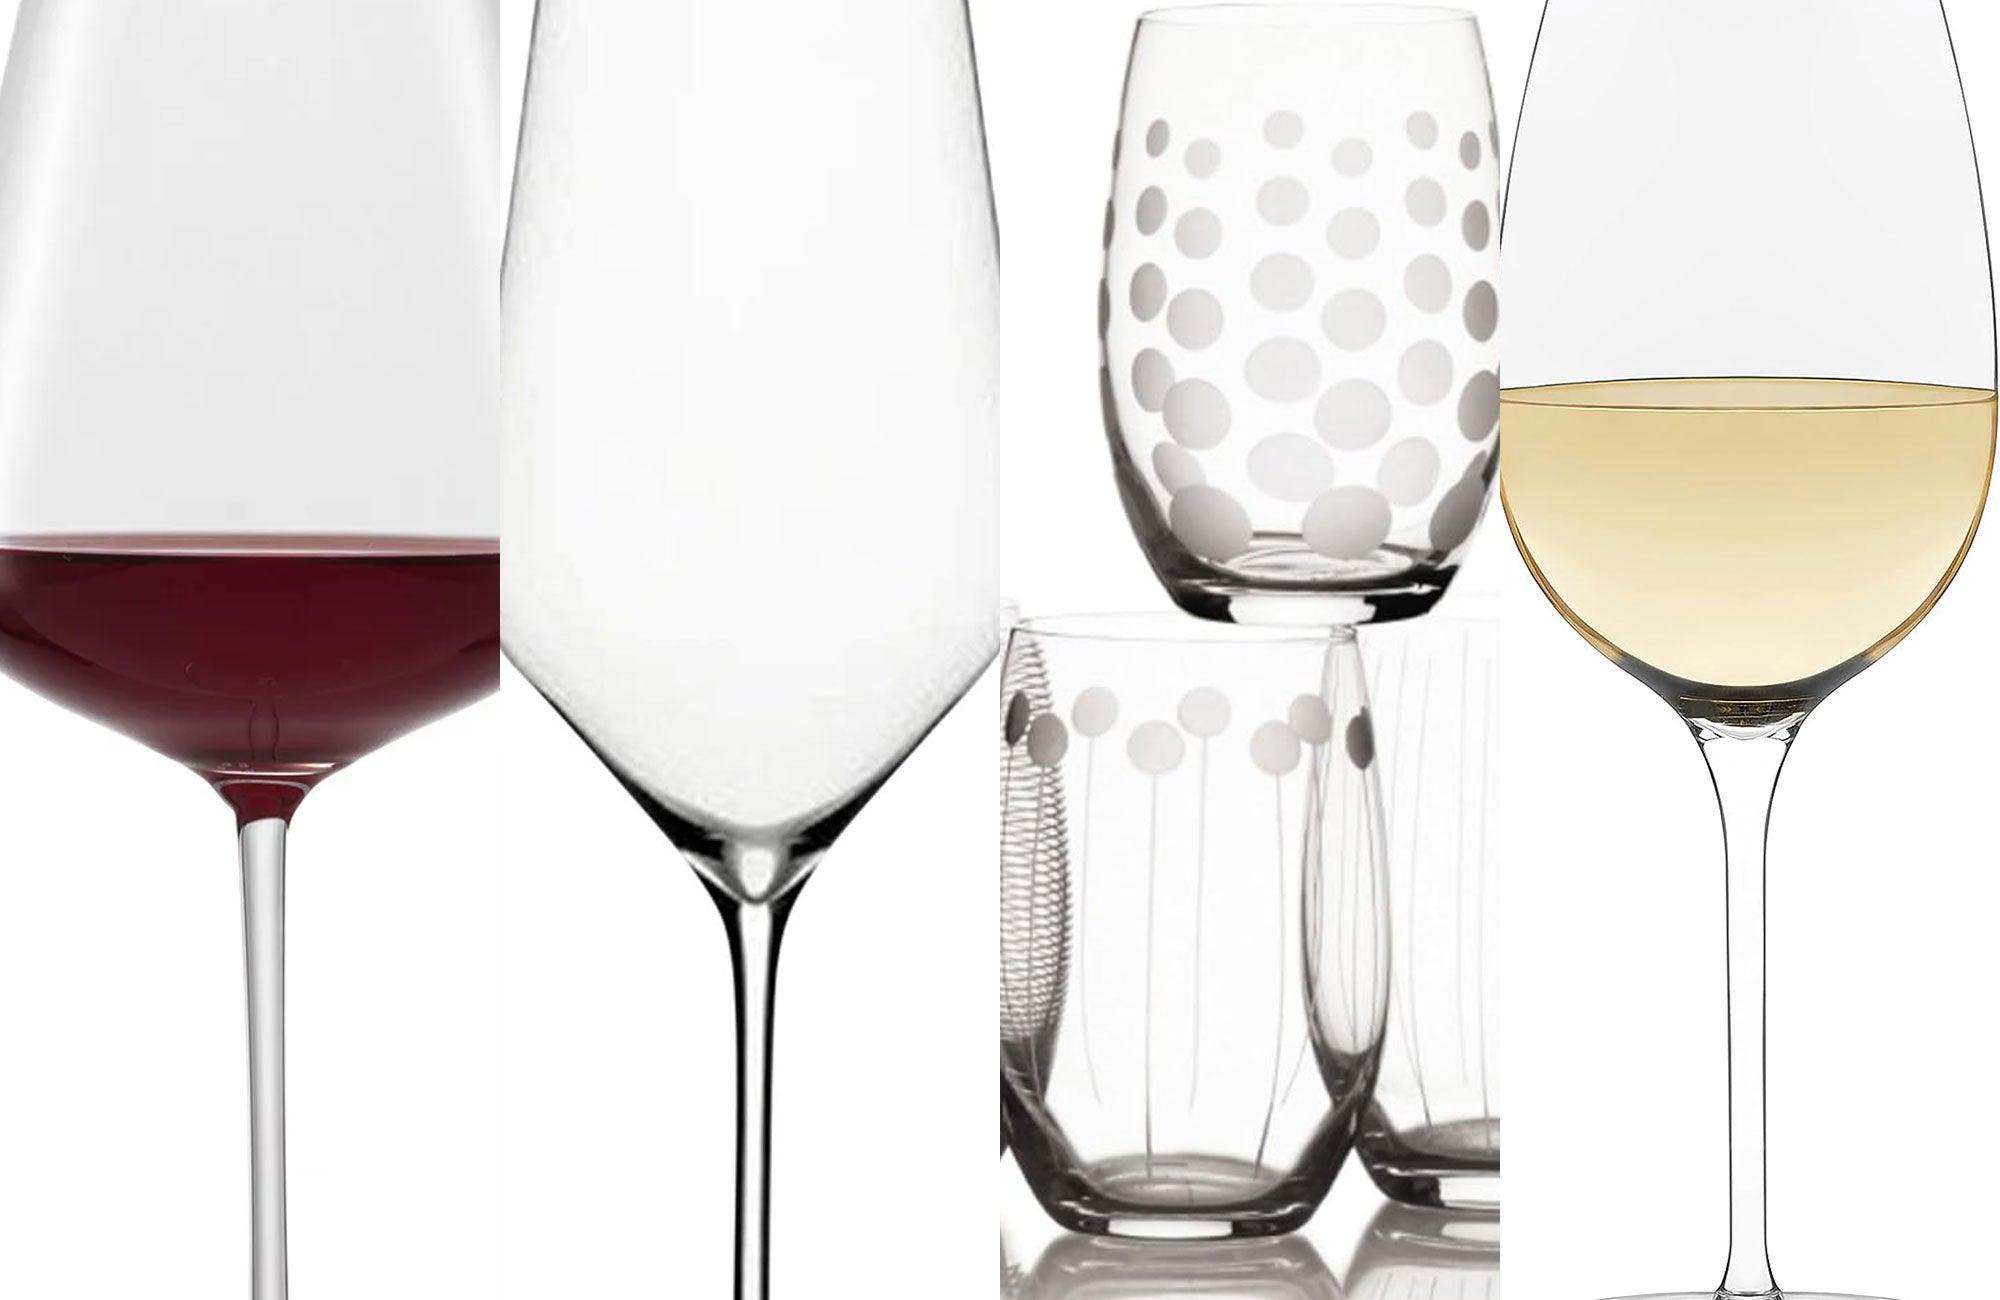 https://www.popsci.com/uploads/2021/04/22/best-wine-glasses-header.jpg?auto=webp